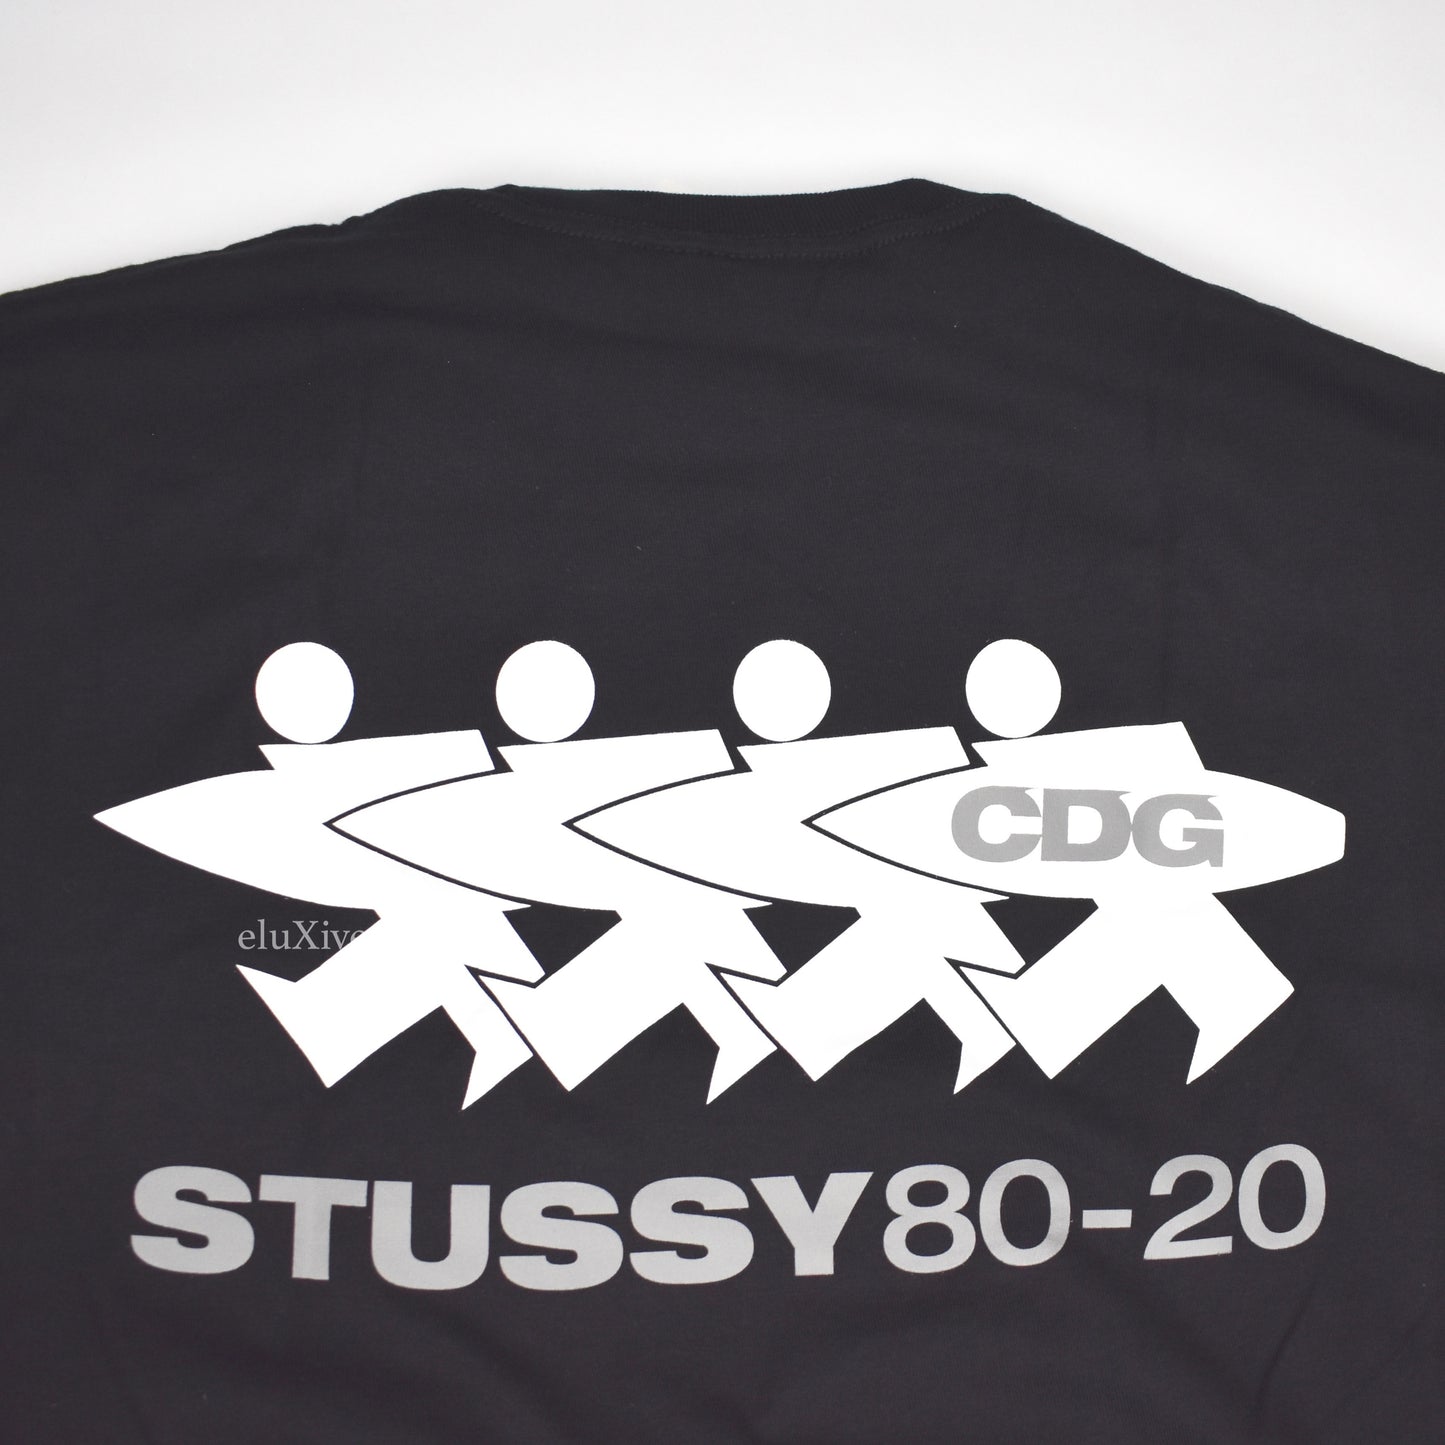 Comme des Garcons x Stussy - Surfman Logo Print T-Shirt (Black)